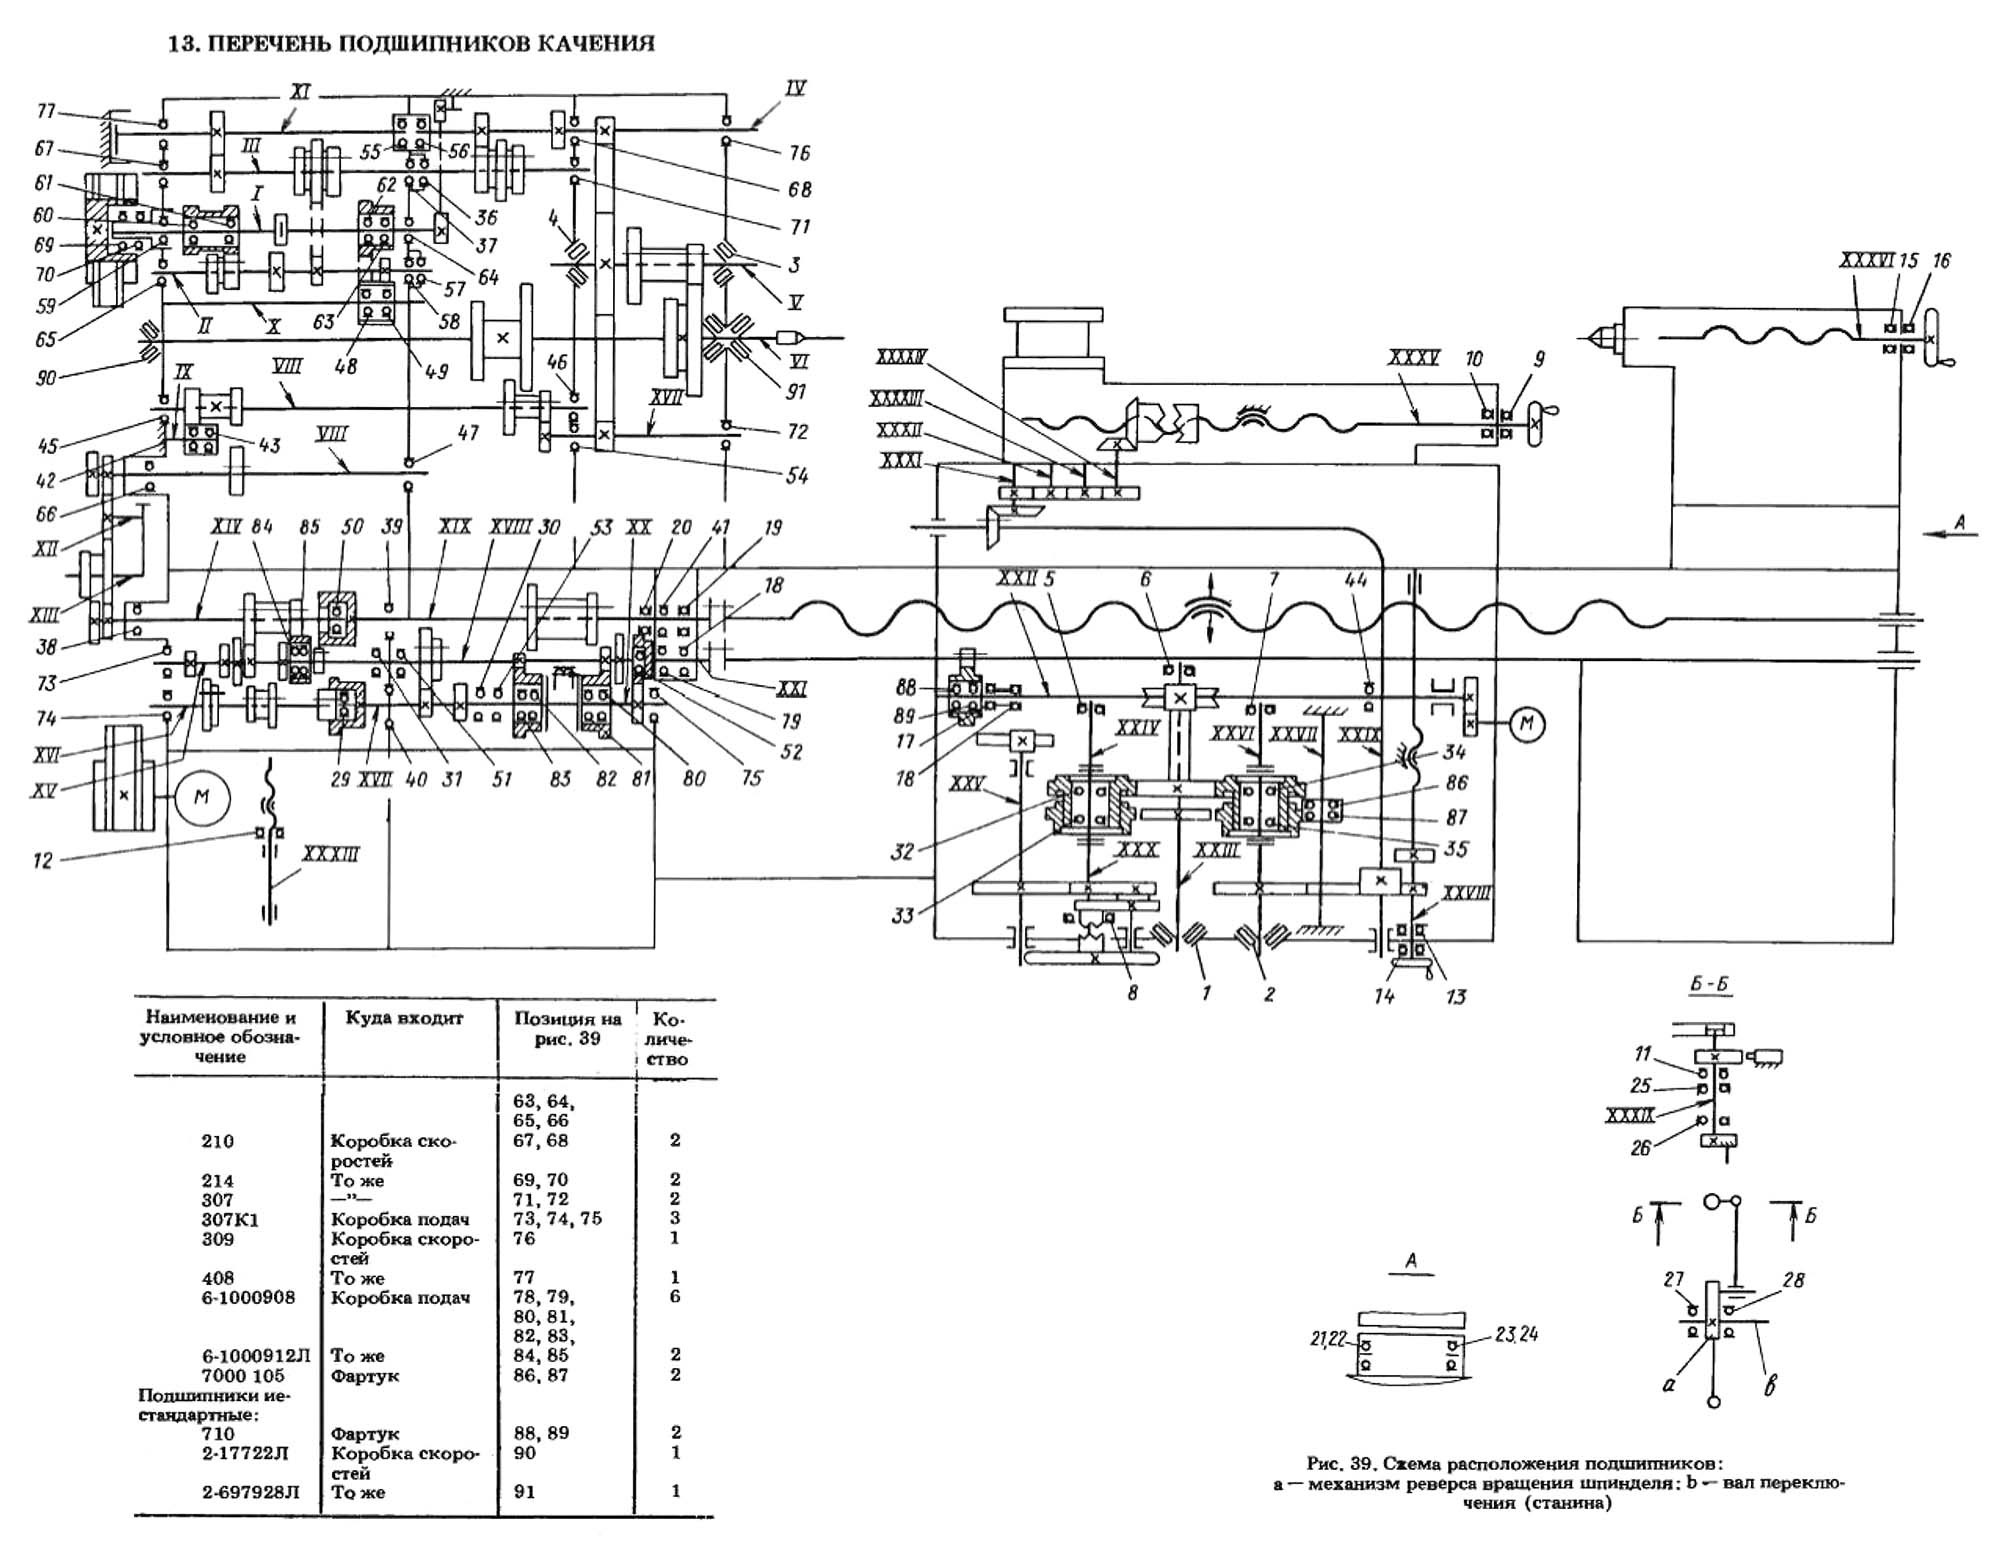 Обзор токарно-винторезного станка 1м61: конструктив, характеристики, фото